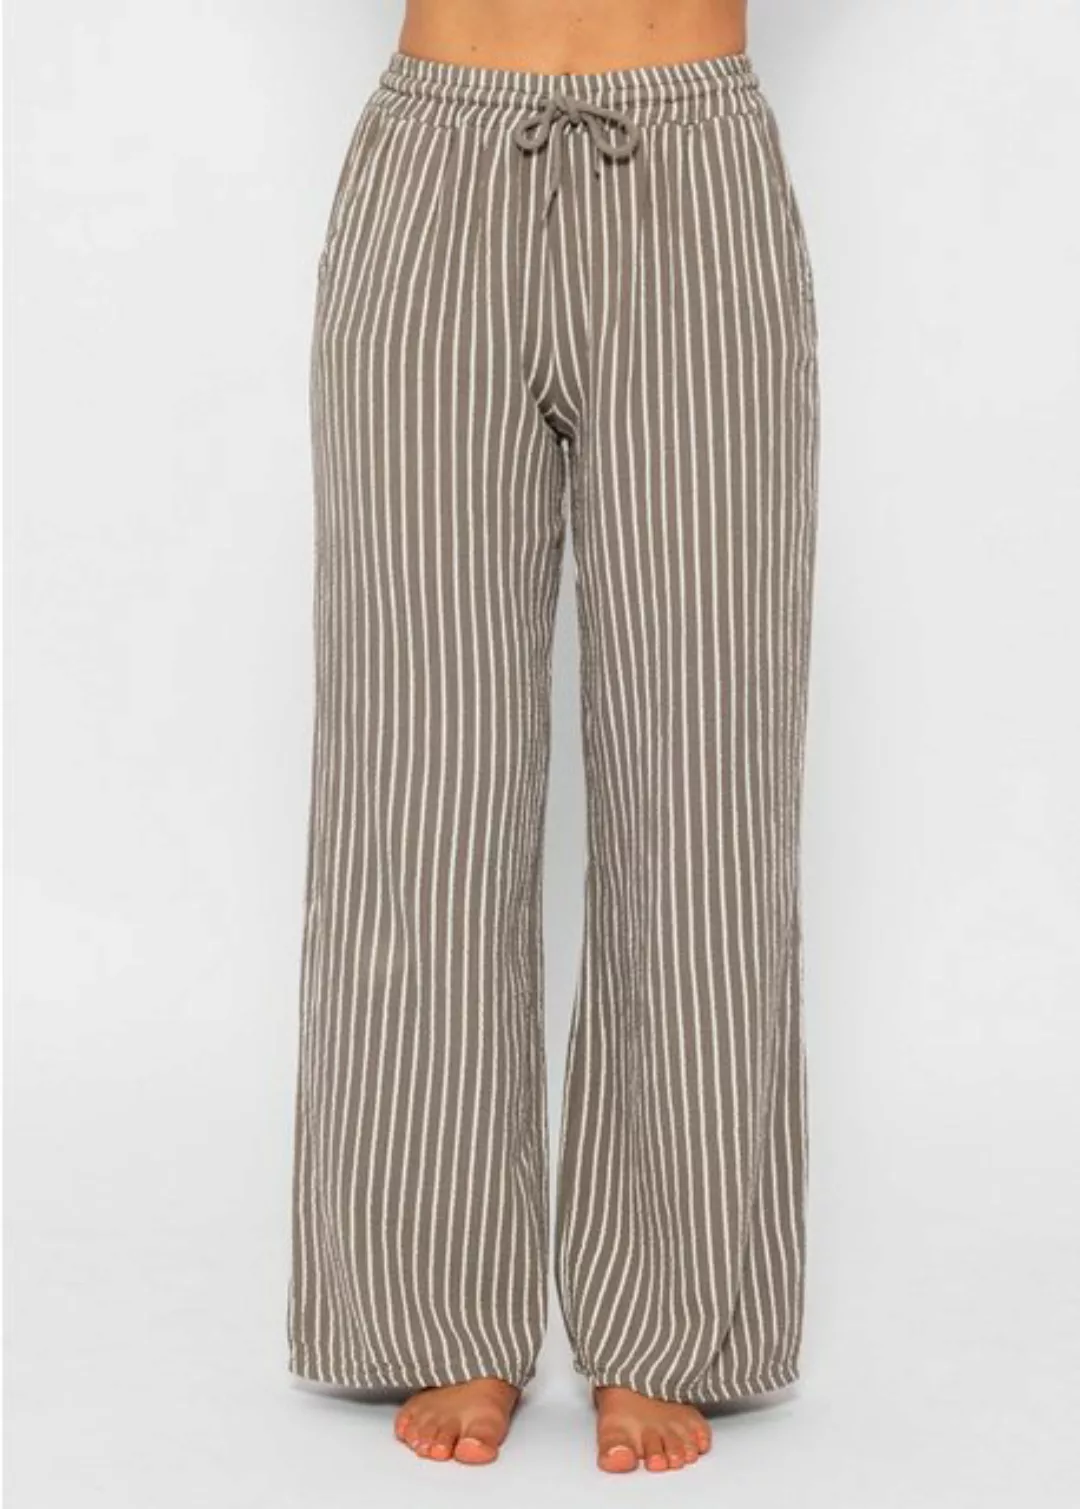 SASSYCLASSY Shorts Lässige Musselin Hose mit Streifen 100 % Baumwolle, atmu günstig online kaufen